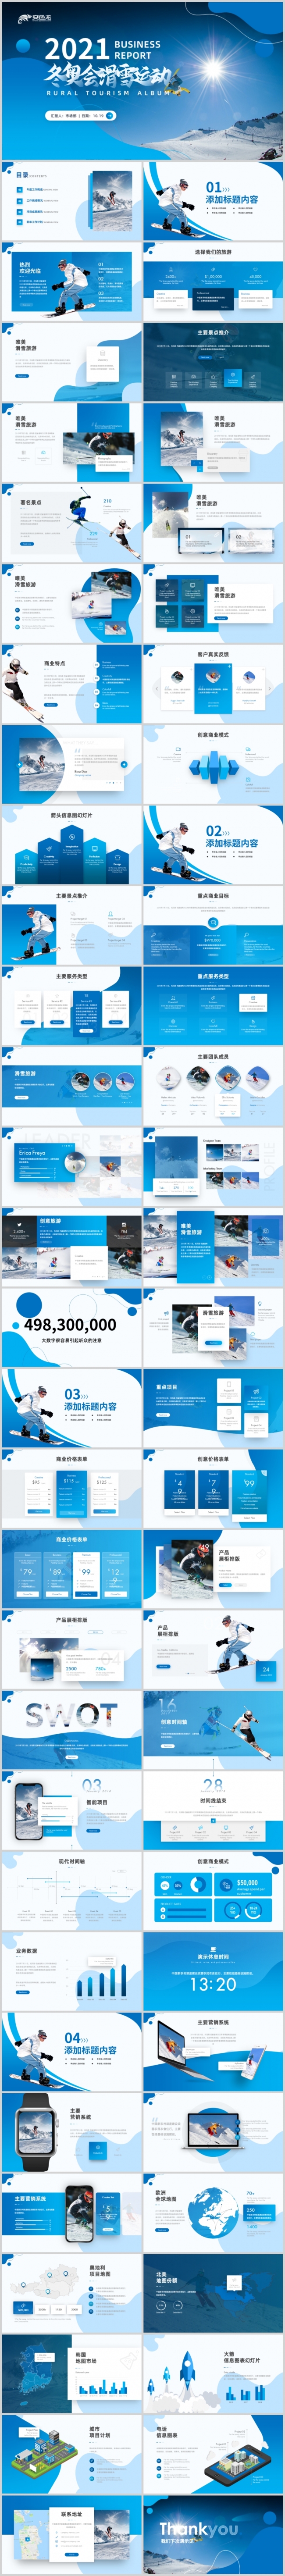 蓝色大气北京冬奥会滑雪运动体育营销画册ppt模板